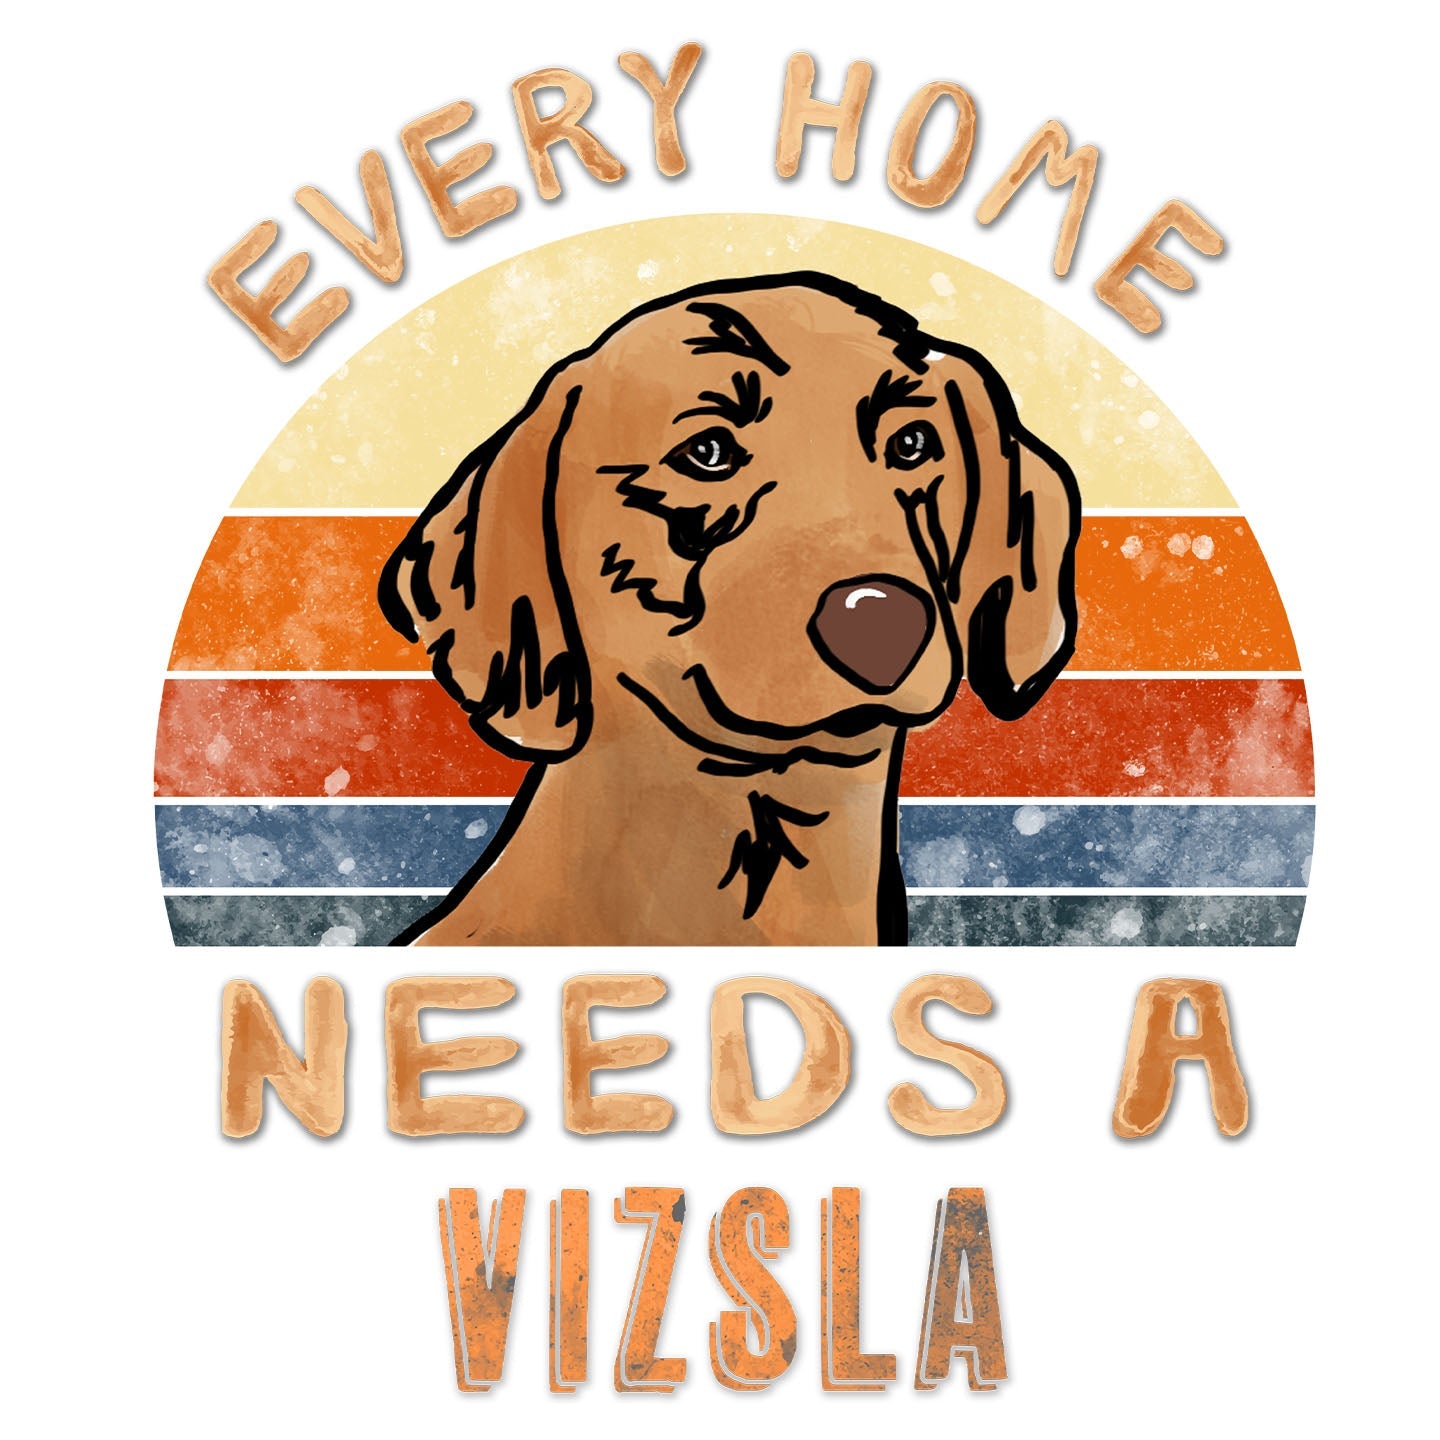 Every Home Needs a Vizsla - Women's V-Neck T-Shirt